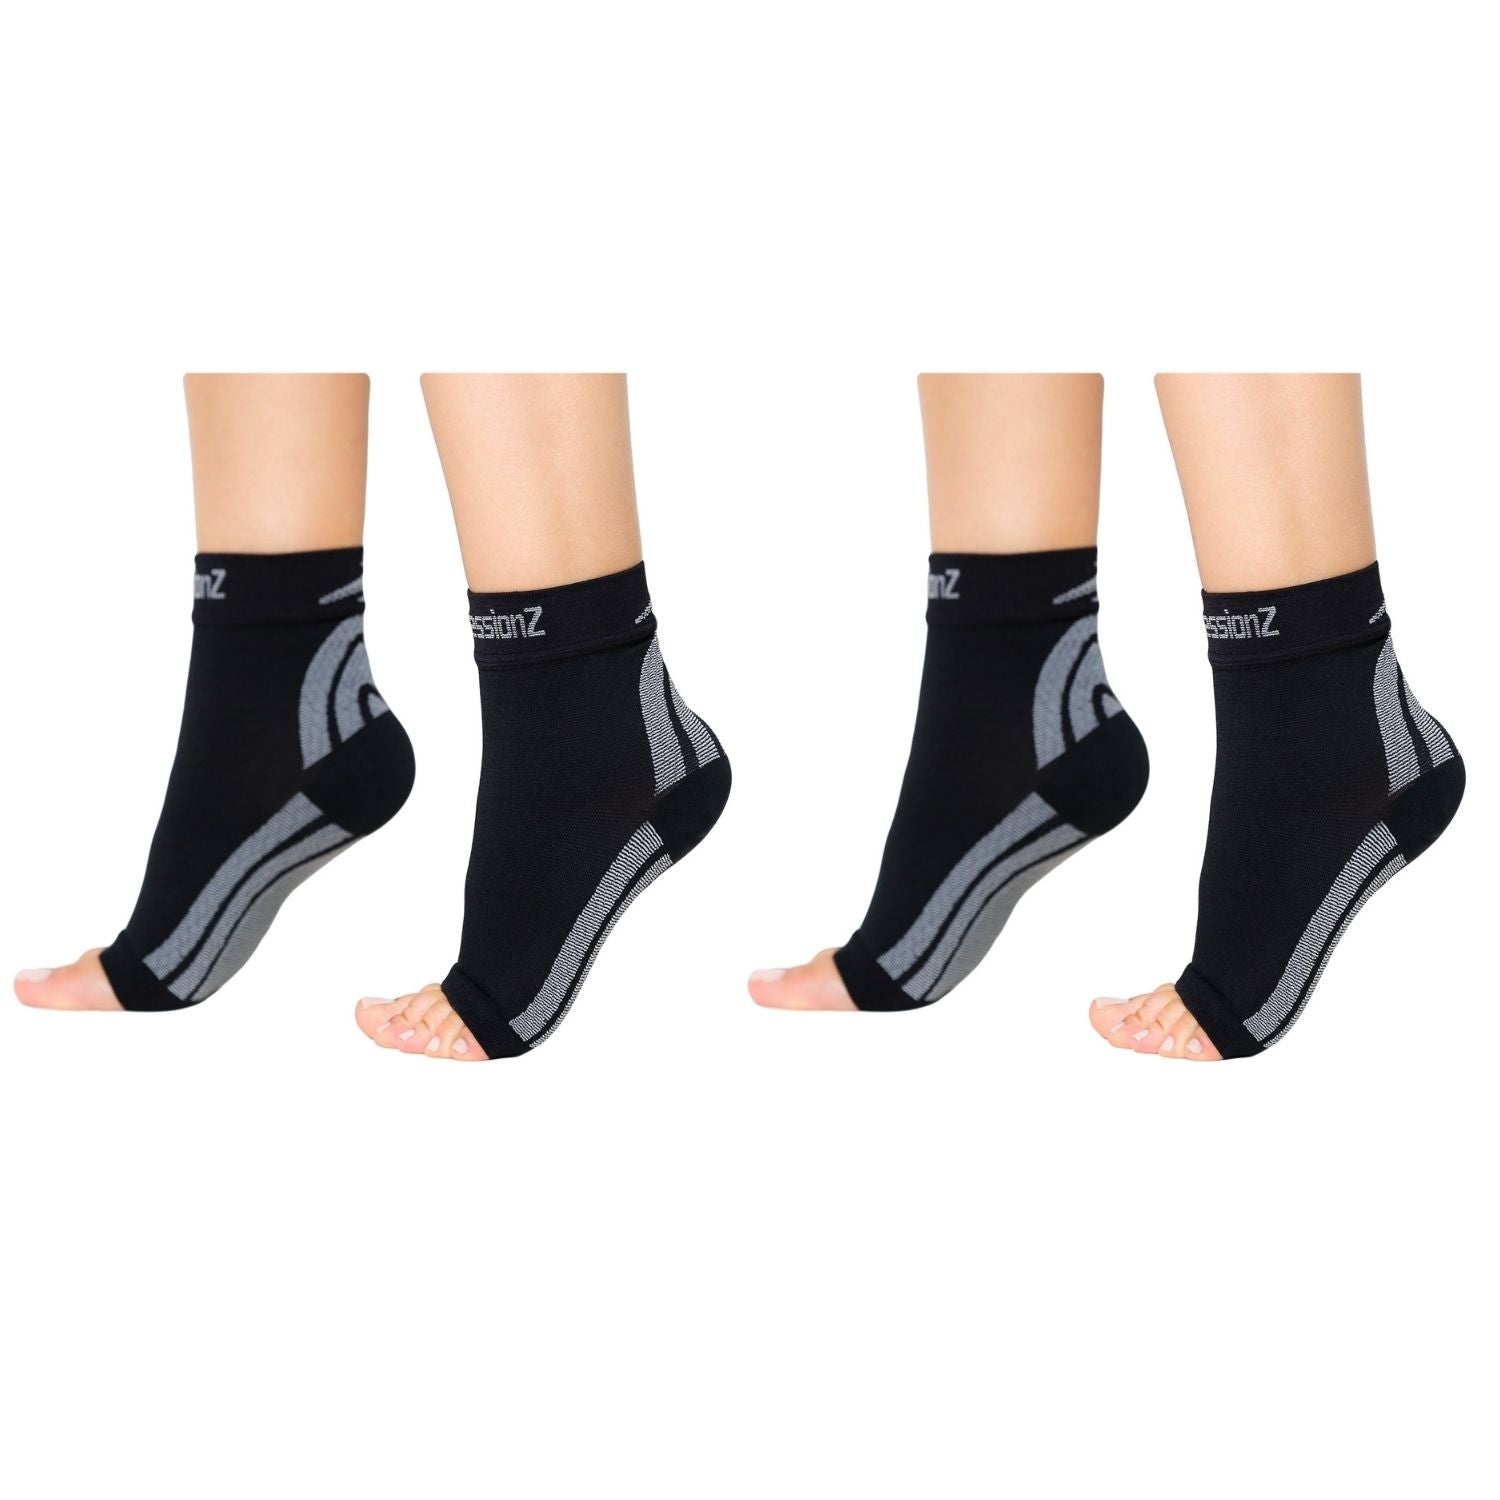 Foot Sleeves - Black 2 Pack